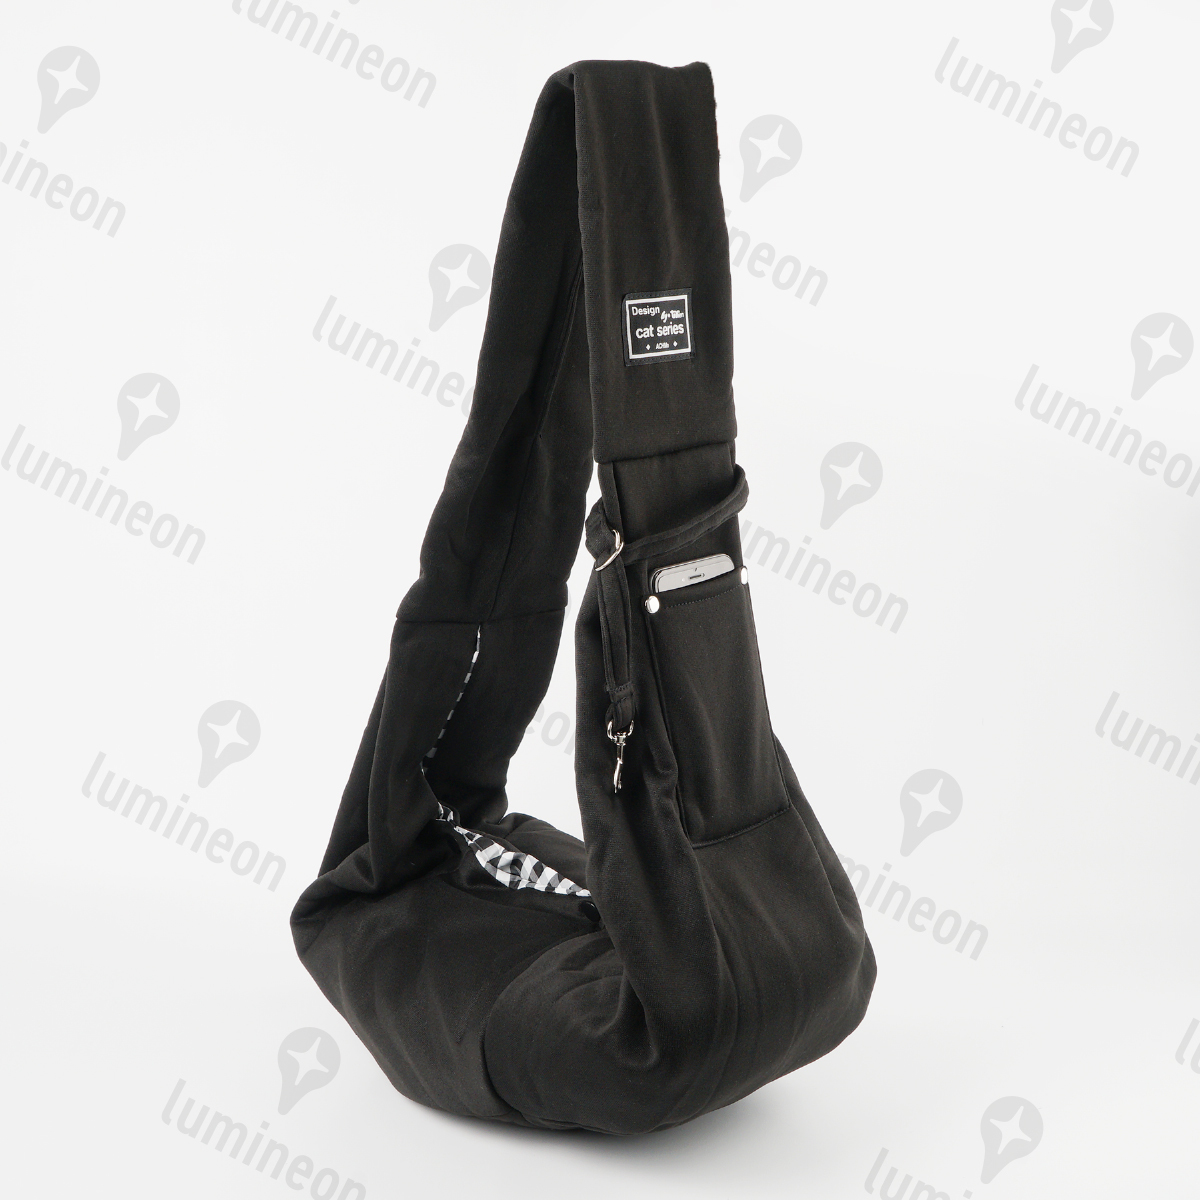  домашнее животное sling дорожная сумка плечо перевозка черный чёрный слинг-переноска ... шнурок рюкзак Cart маленький размер собака средний собака задний g061c 2